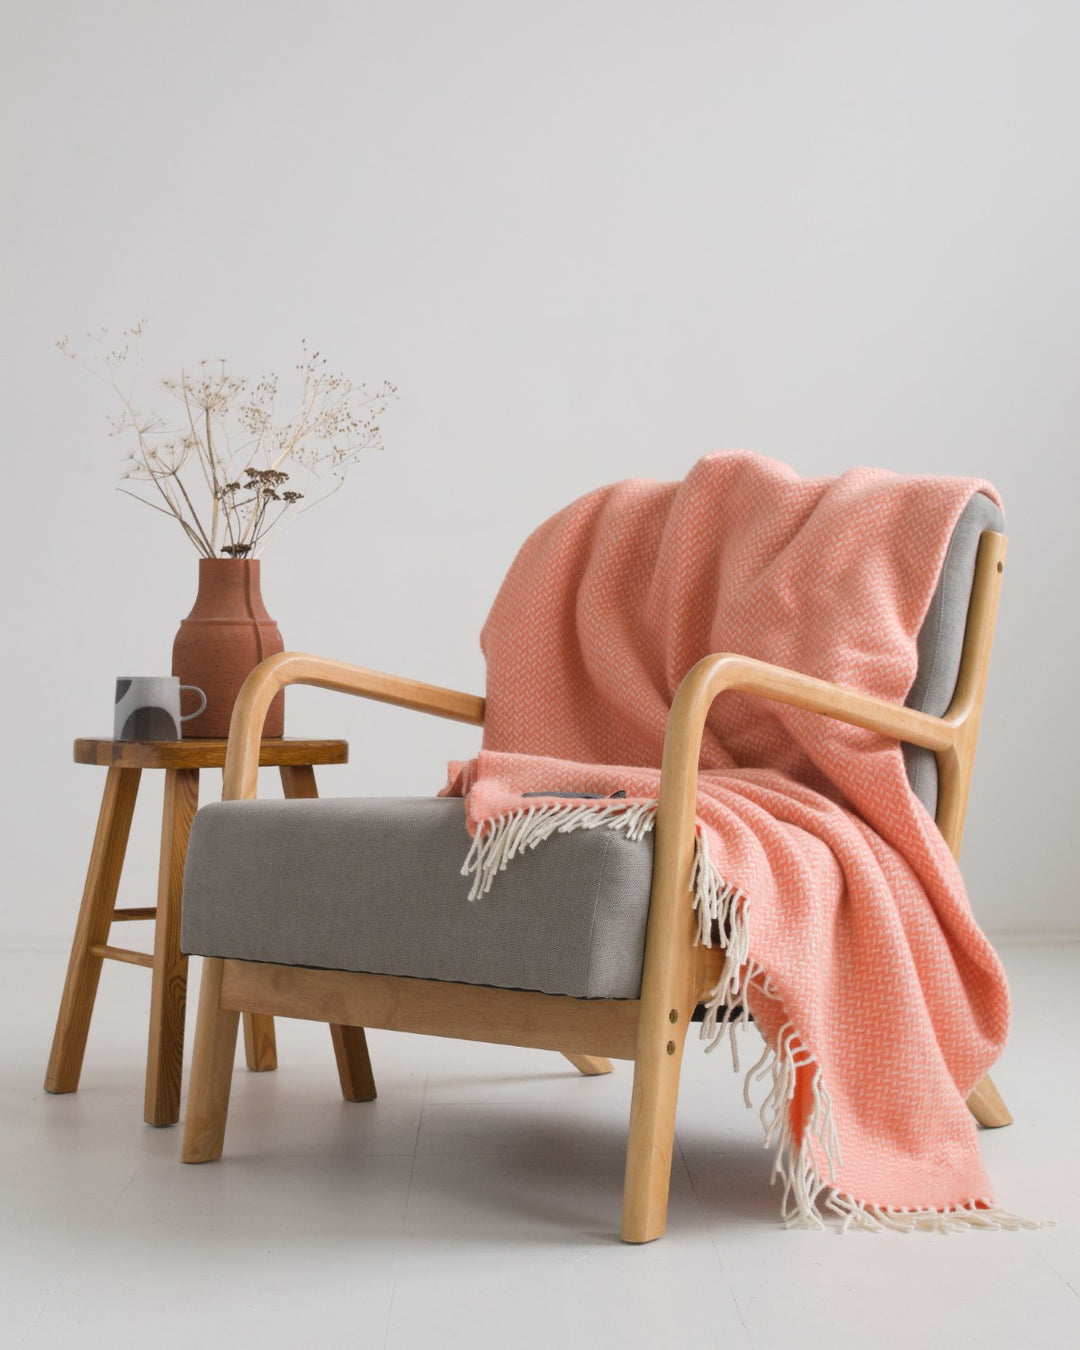 A large orange herringbone wool blanket draped over a lounge chair.